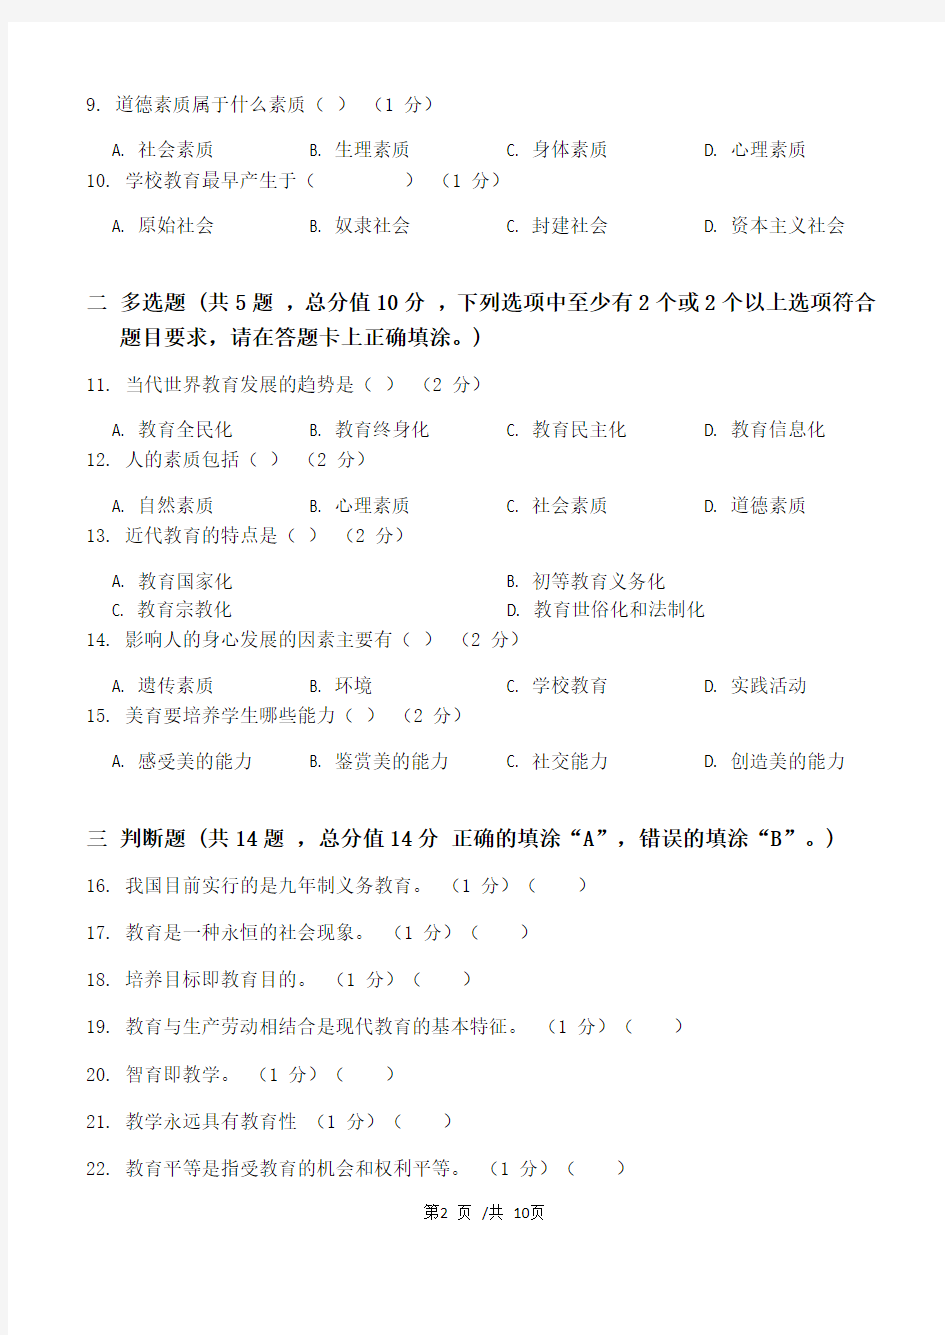 教育学第1阶段练习题江大学考试题库及答案一科共有三个阶段,这是其中一个阶段。答案在最后一页